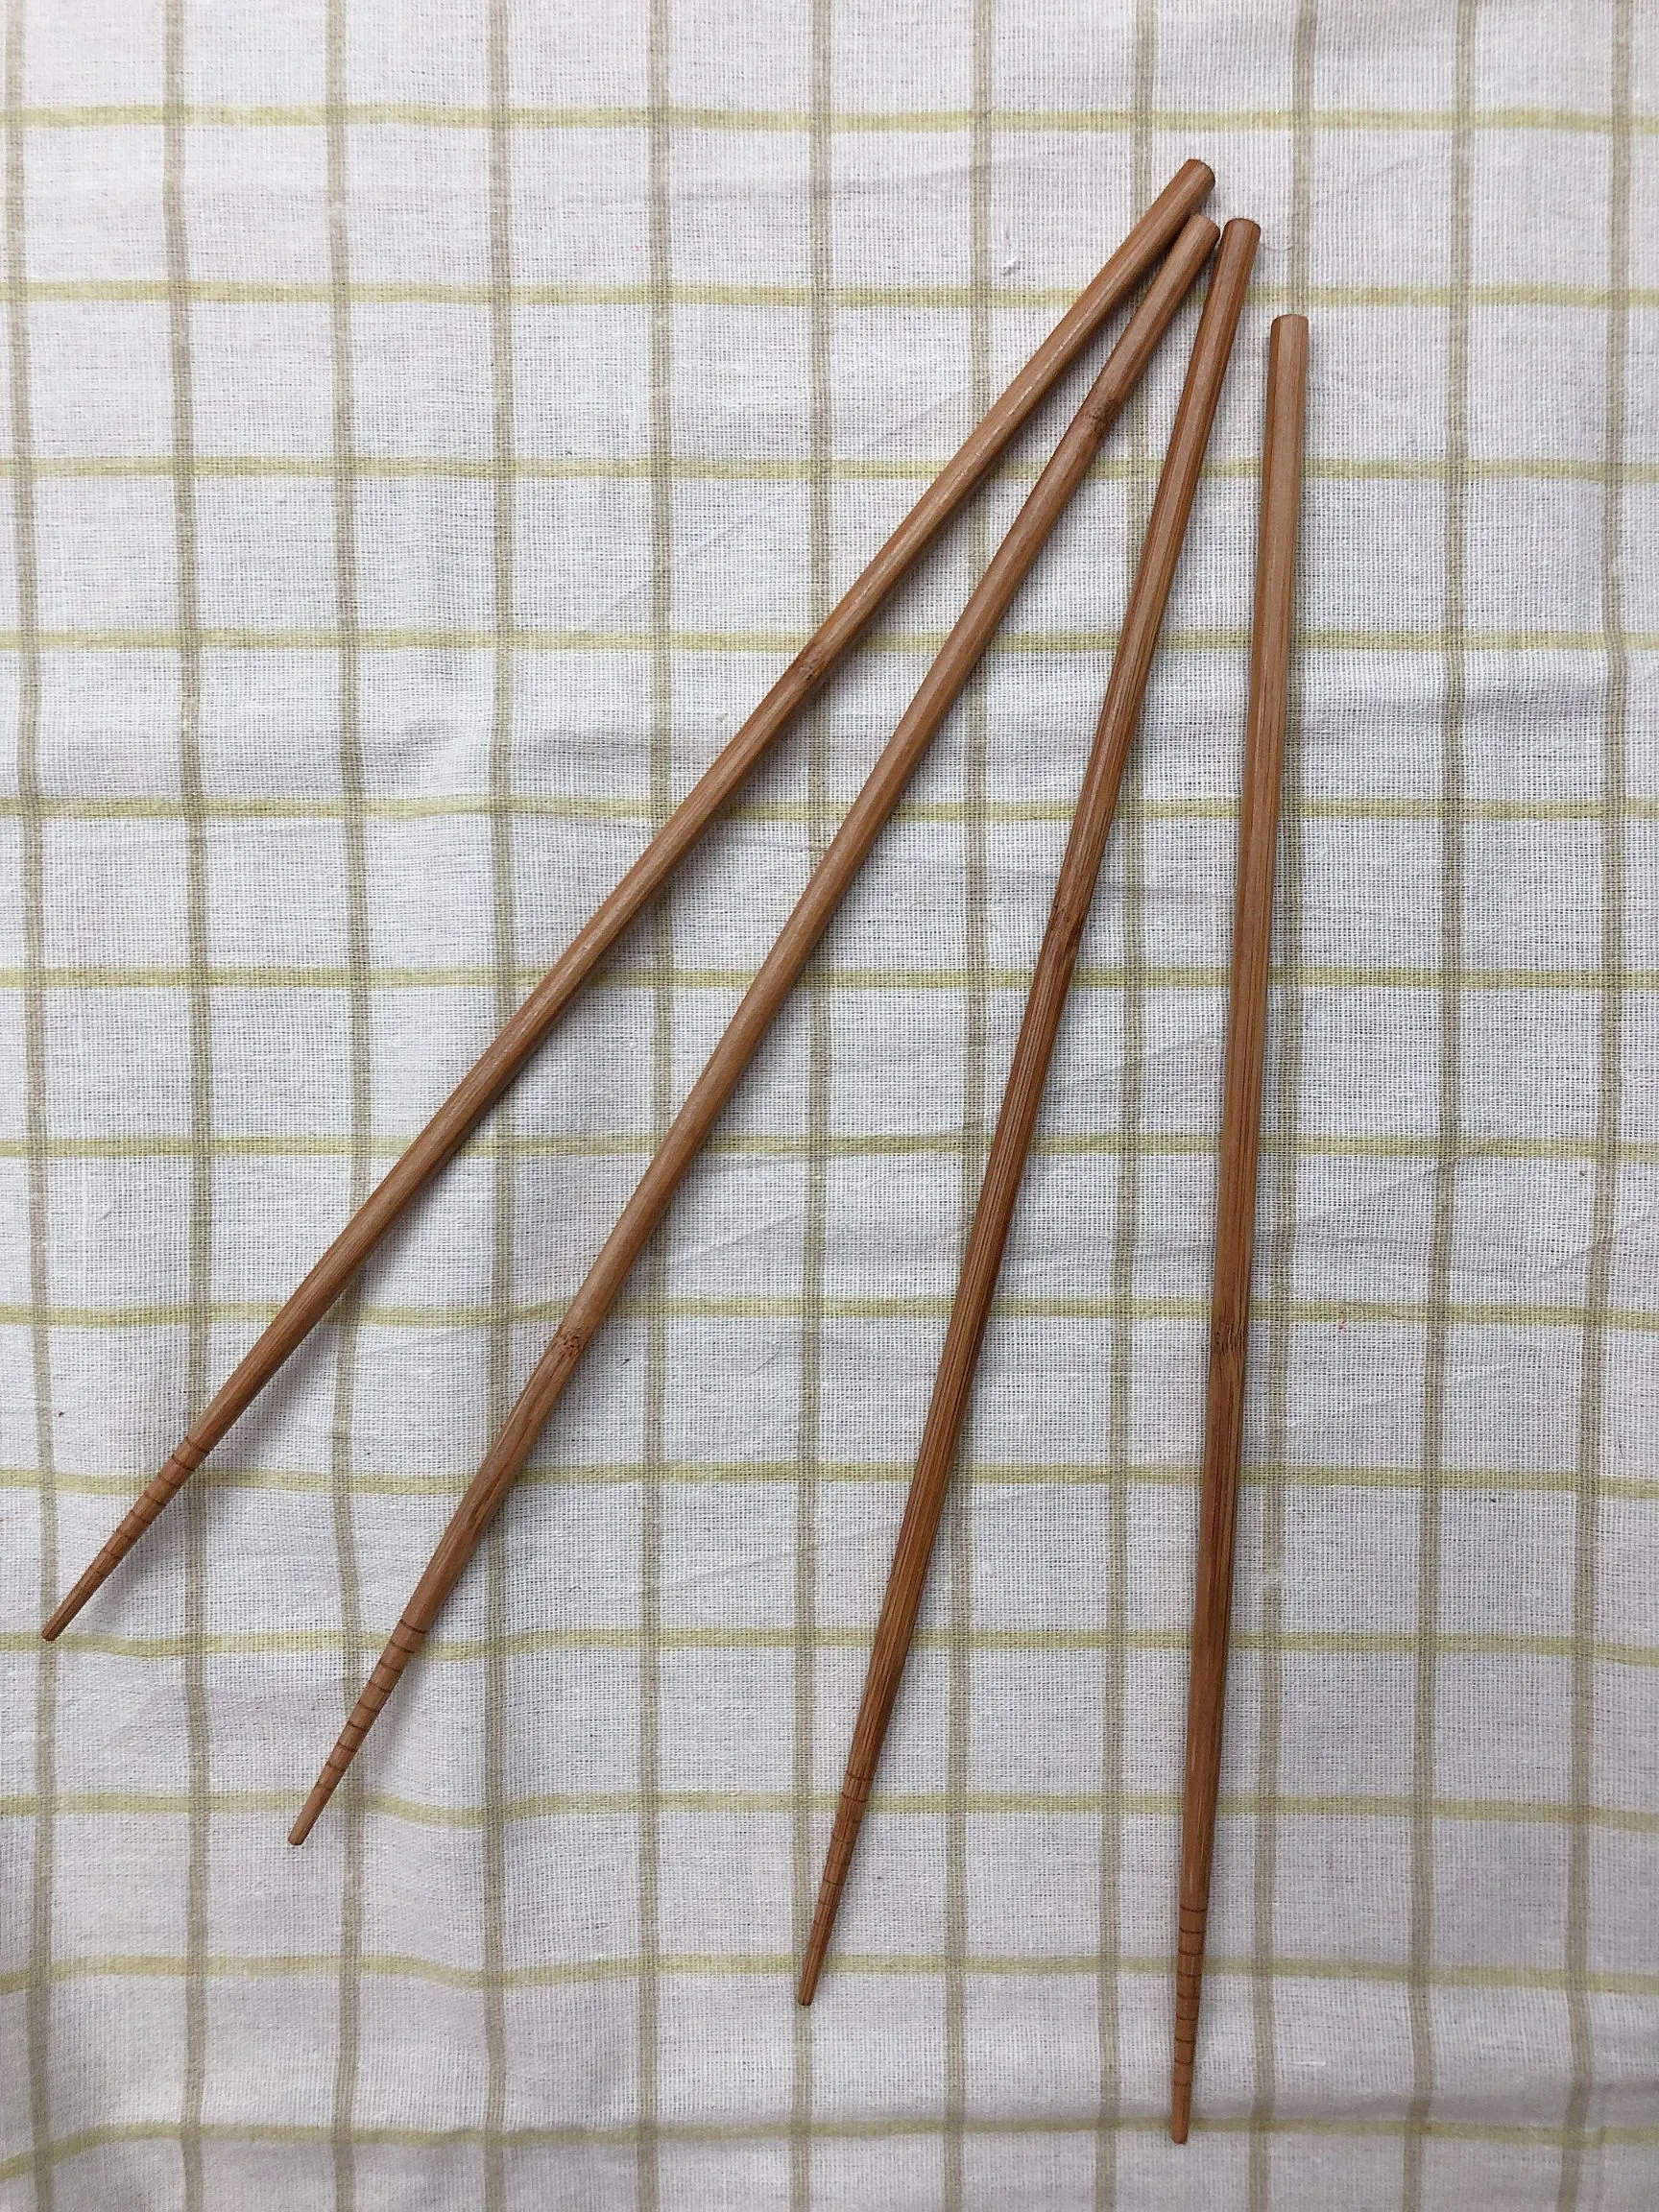 火锅筷/竹筷/家用筷产品图